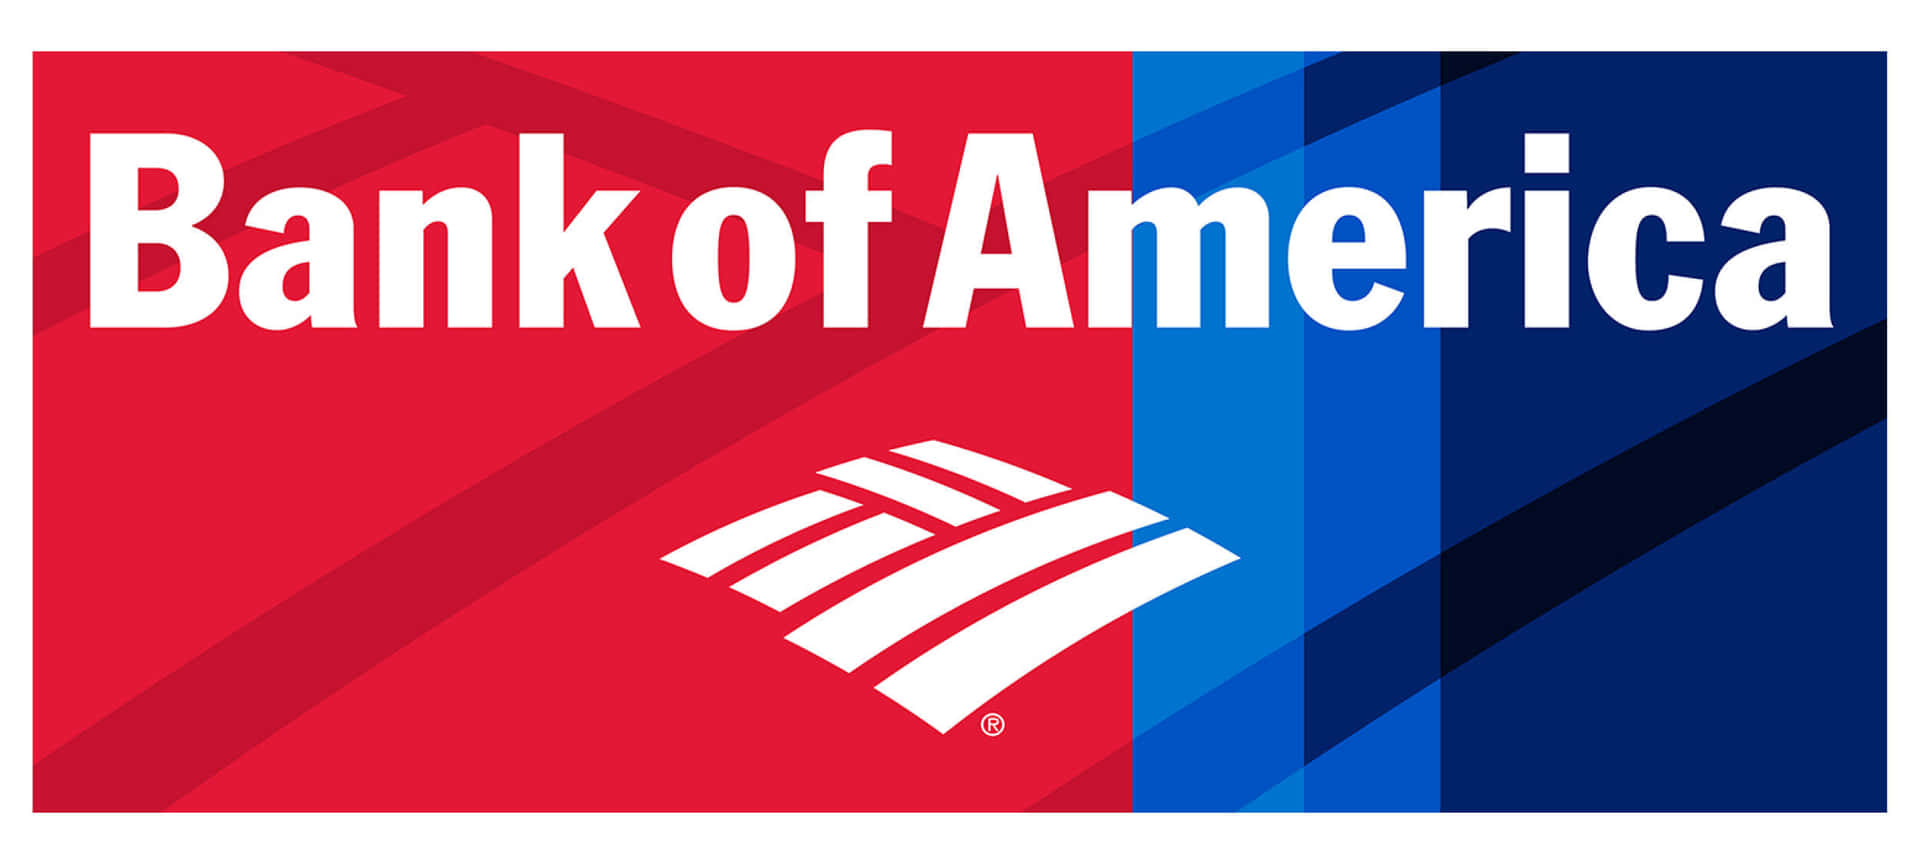 Bankof America: Kopplar Dig Till Dina Finansiella Mål